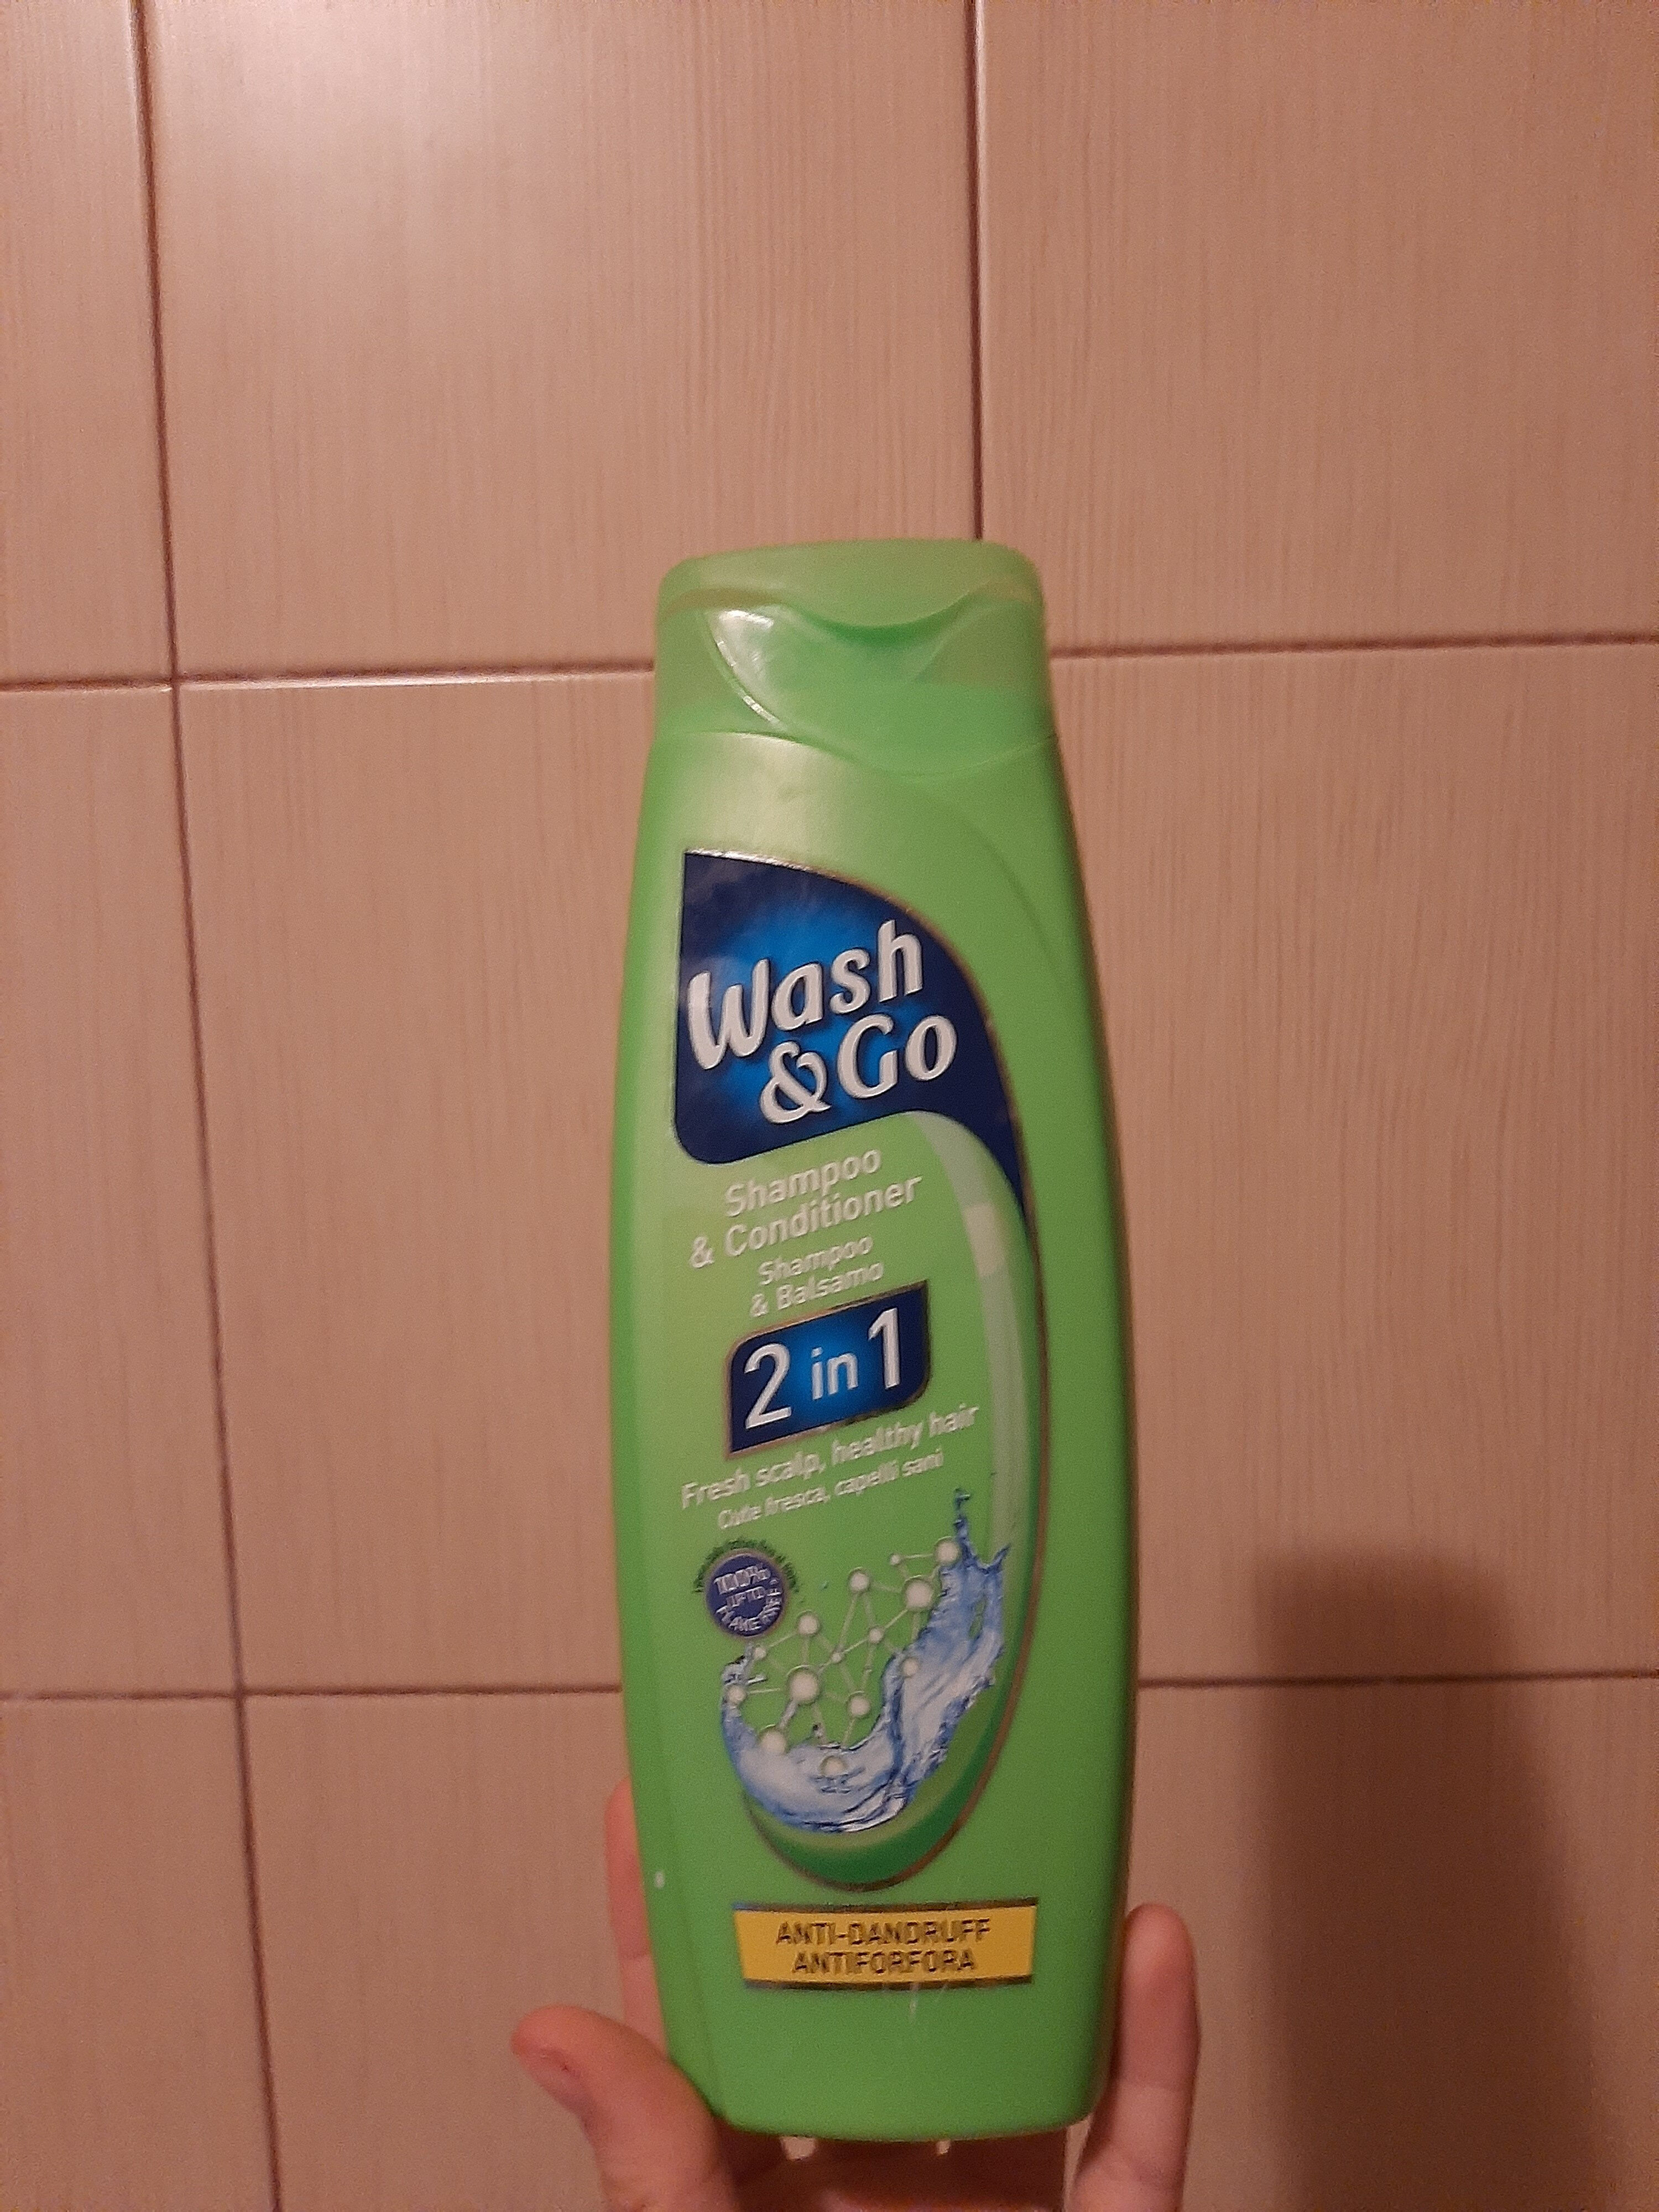 Wash & Go - Product - en